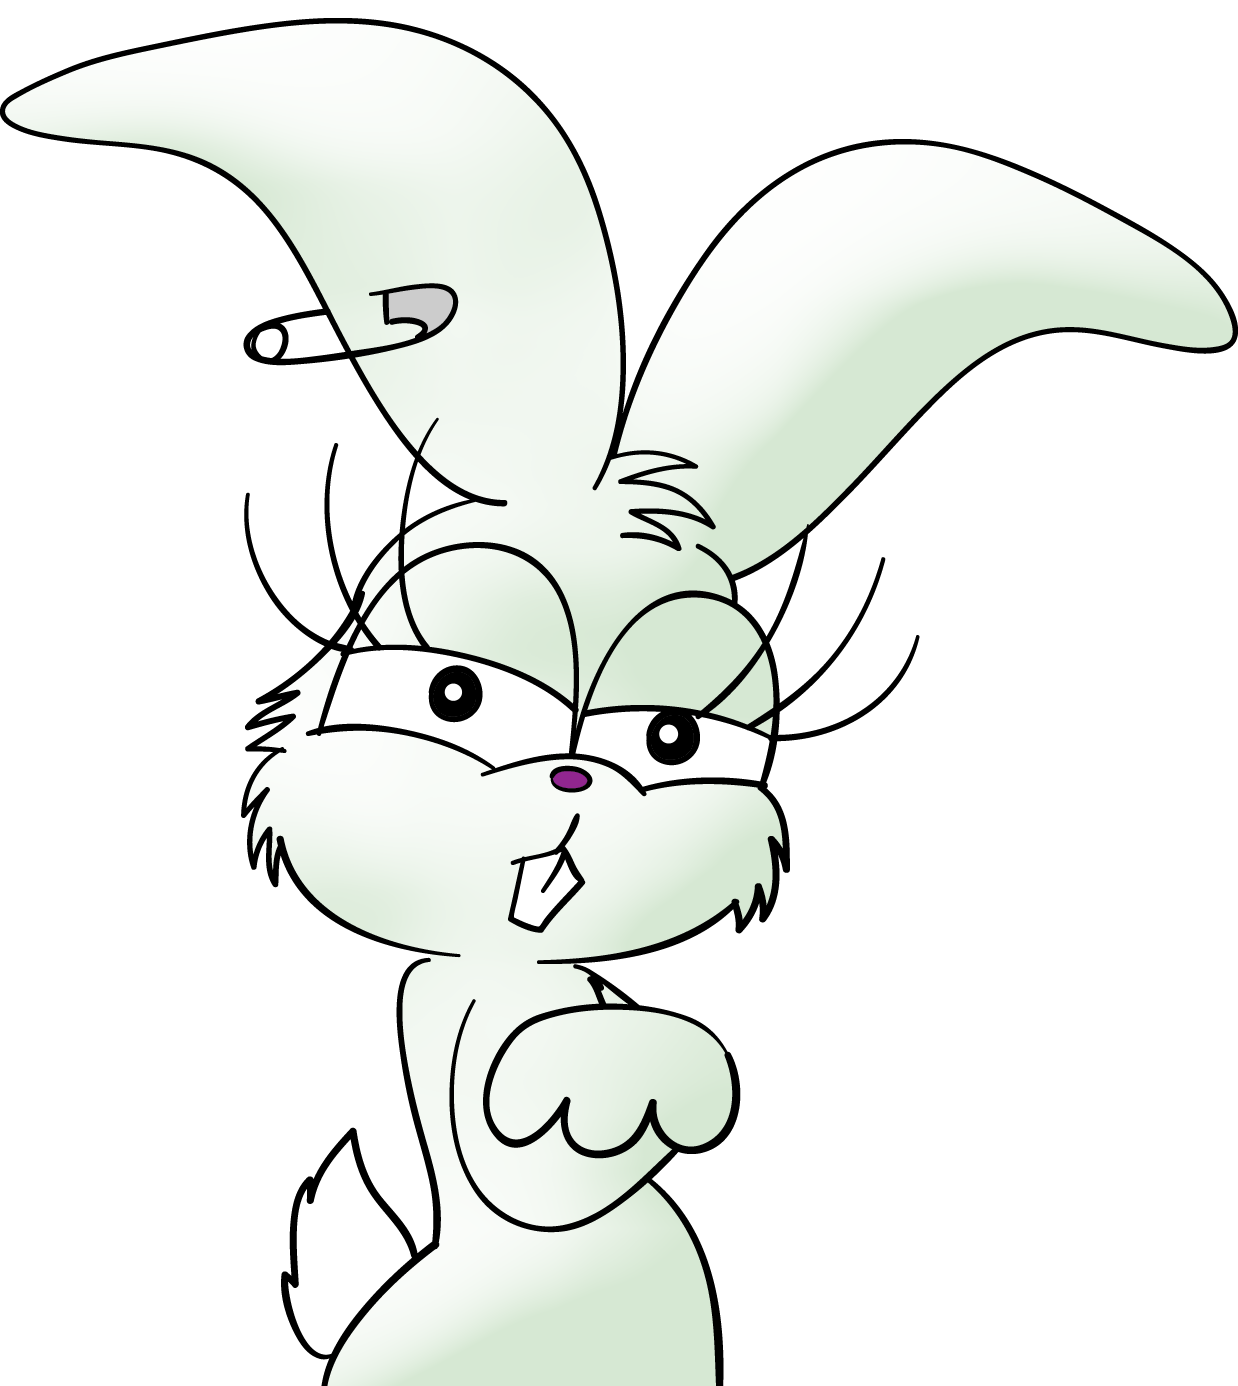 Зайчику плохо. Заяц из домашних животных. Заяц персонаж клипарт. Ехидный заяц на белом фоне. Плохой заяц.